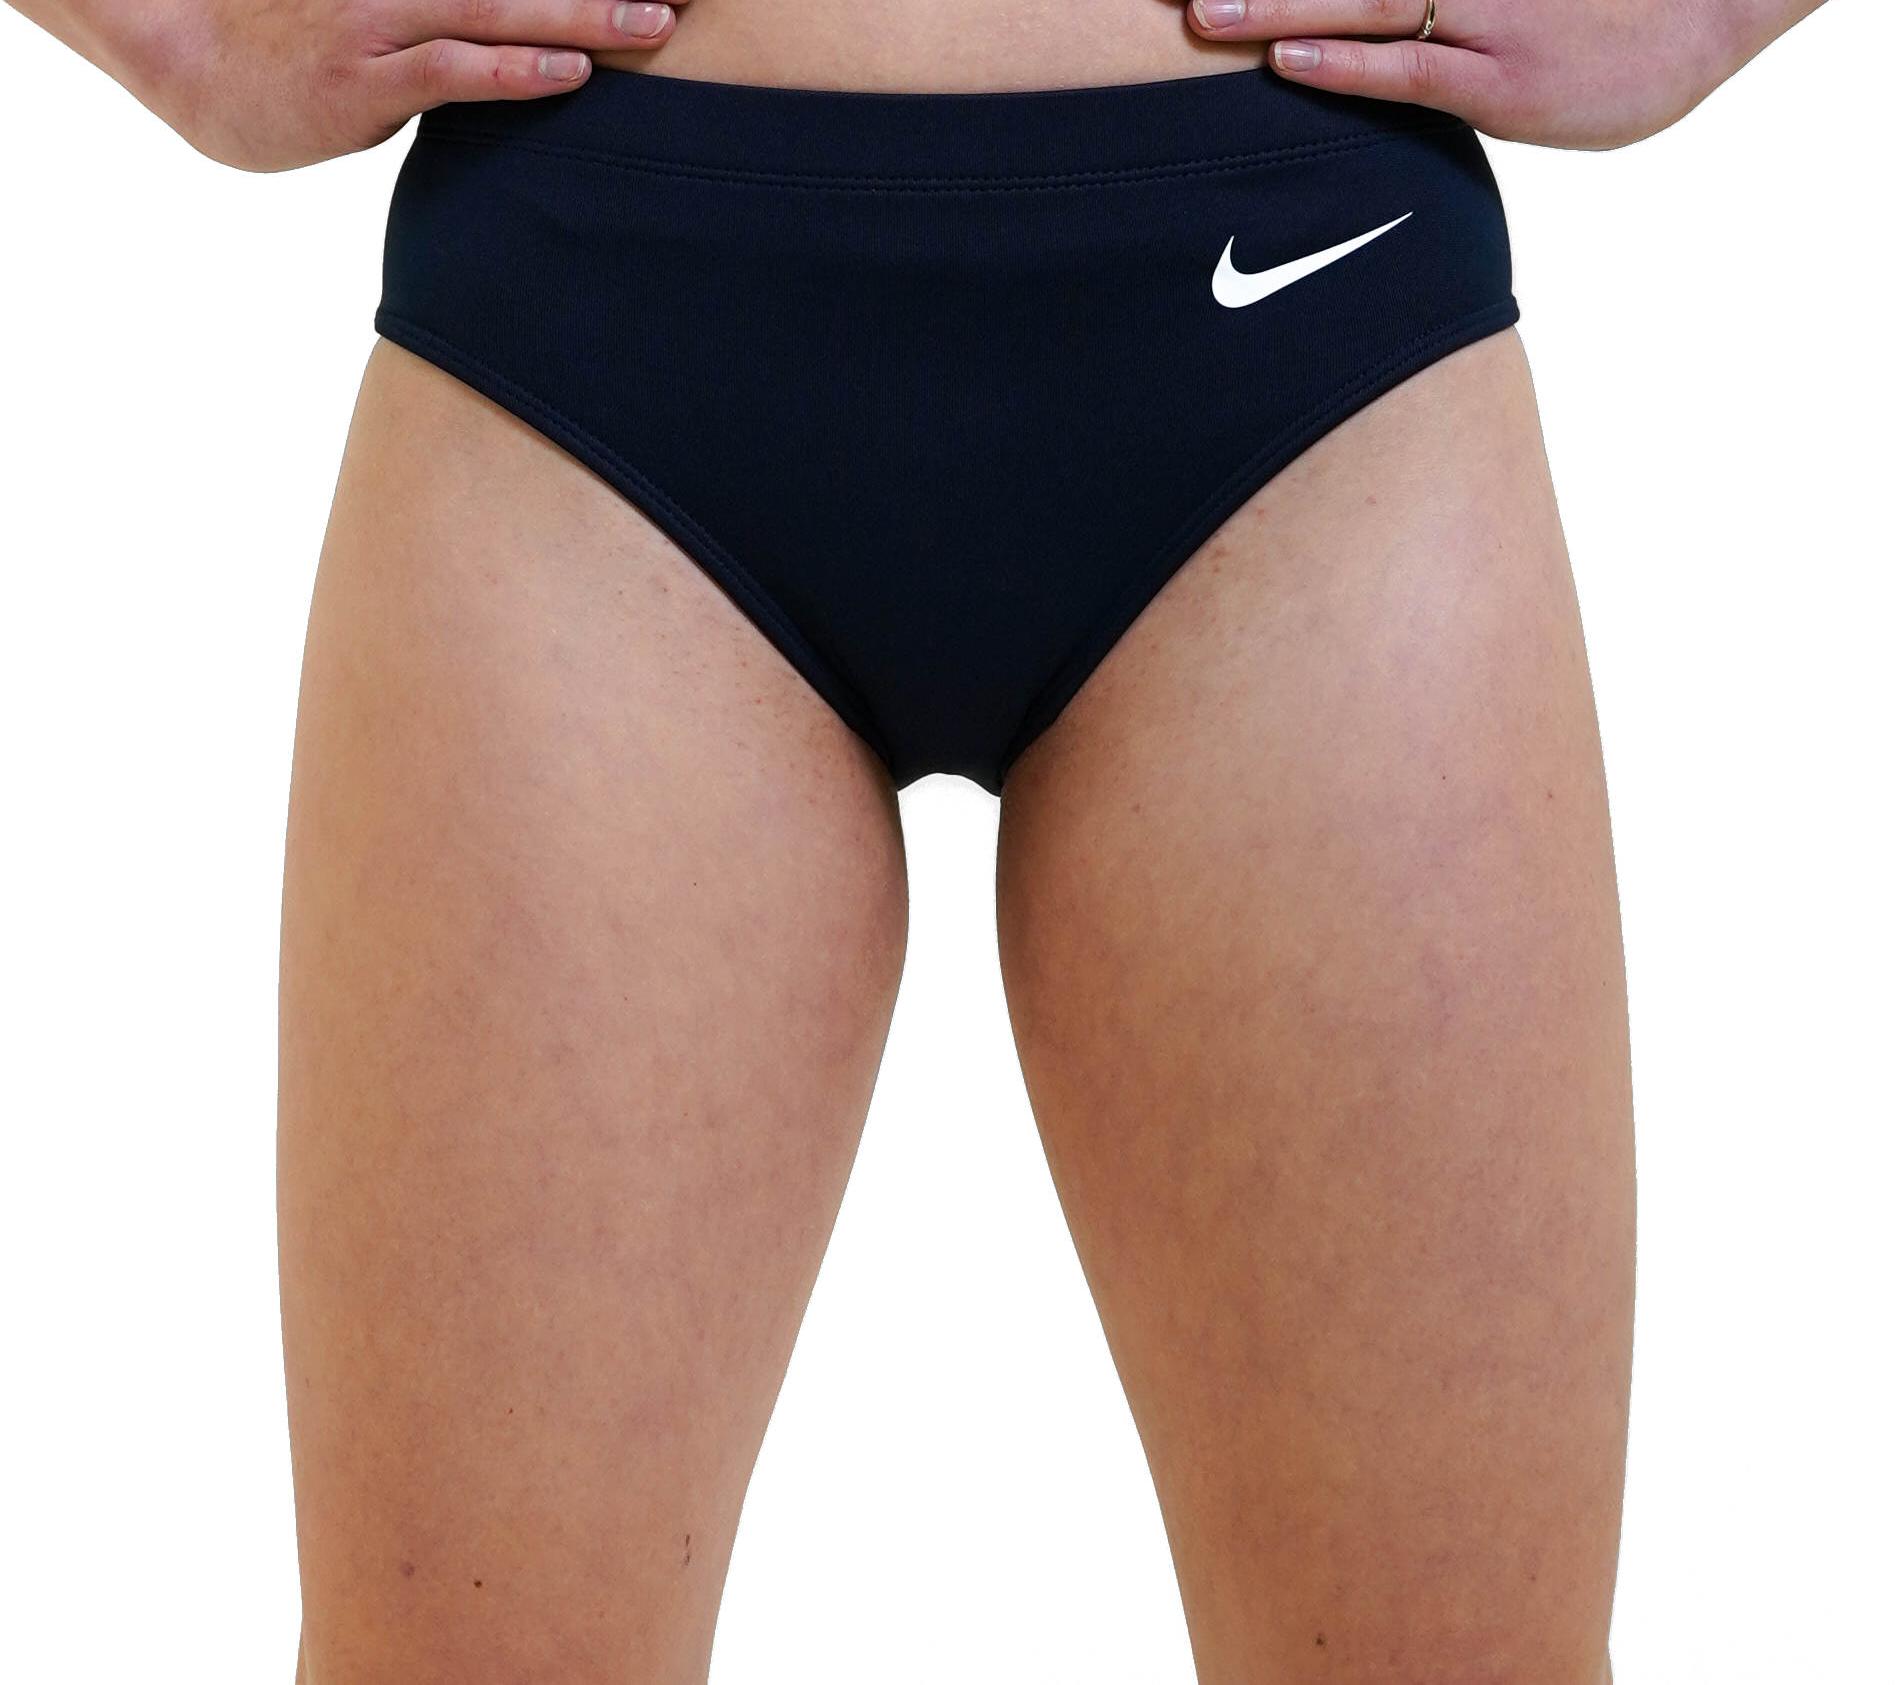 udskille Gå rundt Ruckus Panties Nike Women Stock Brief - Top4Running.com